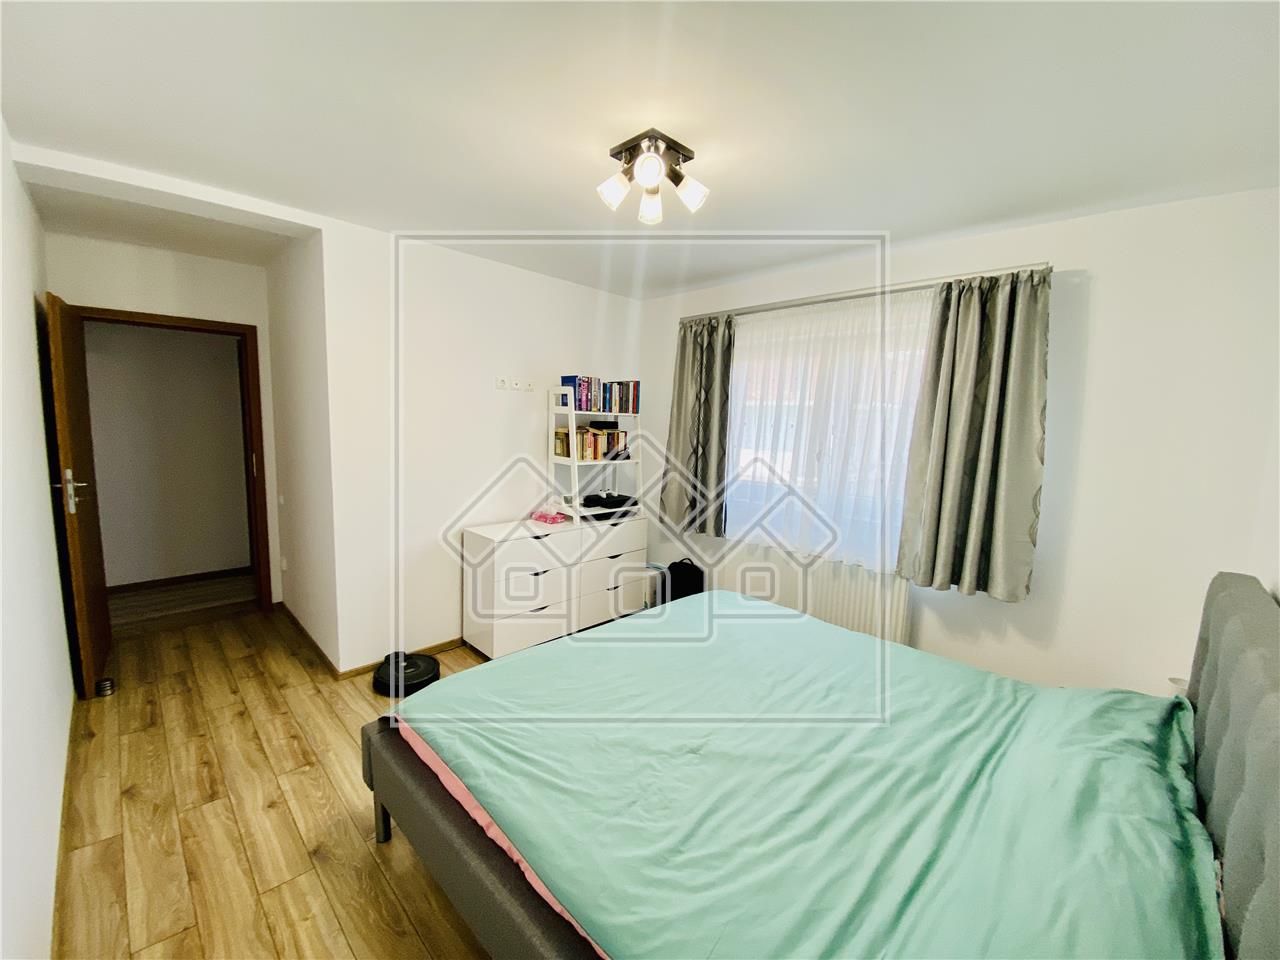 Apartament de vanzare in Sibiu - 75 mp utili - 3 camere si balcon